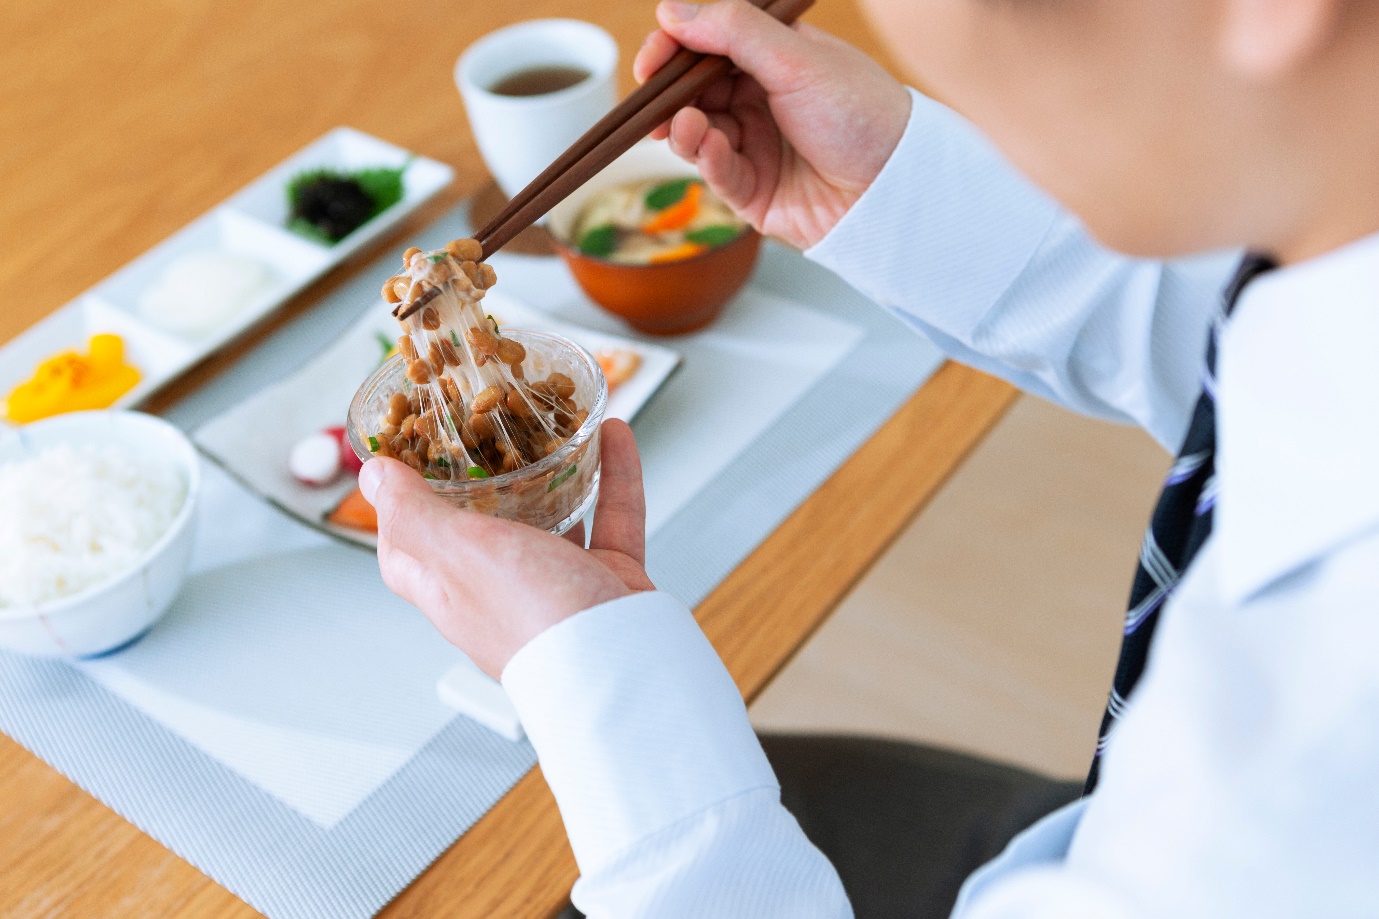 Enzym nattokinase trong món natto giúp đánh tan cục máu đông, phòng ngừa đột quỵ